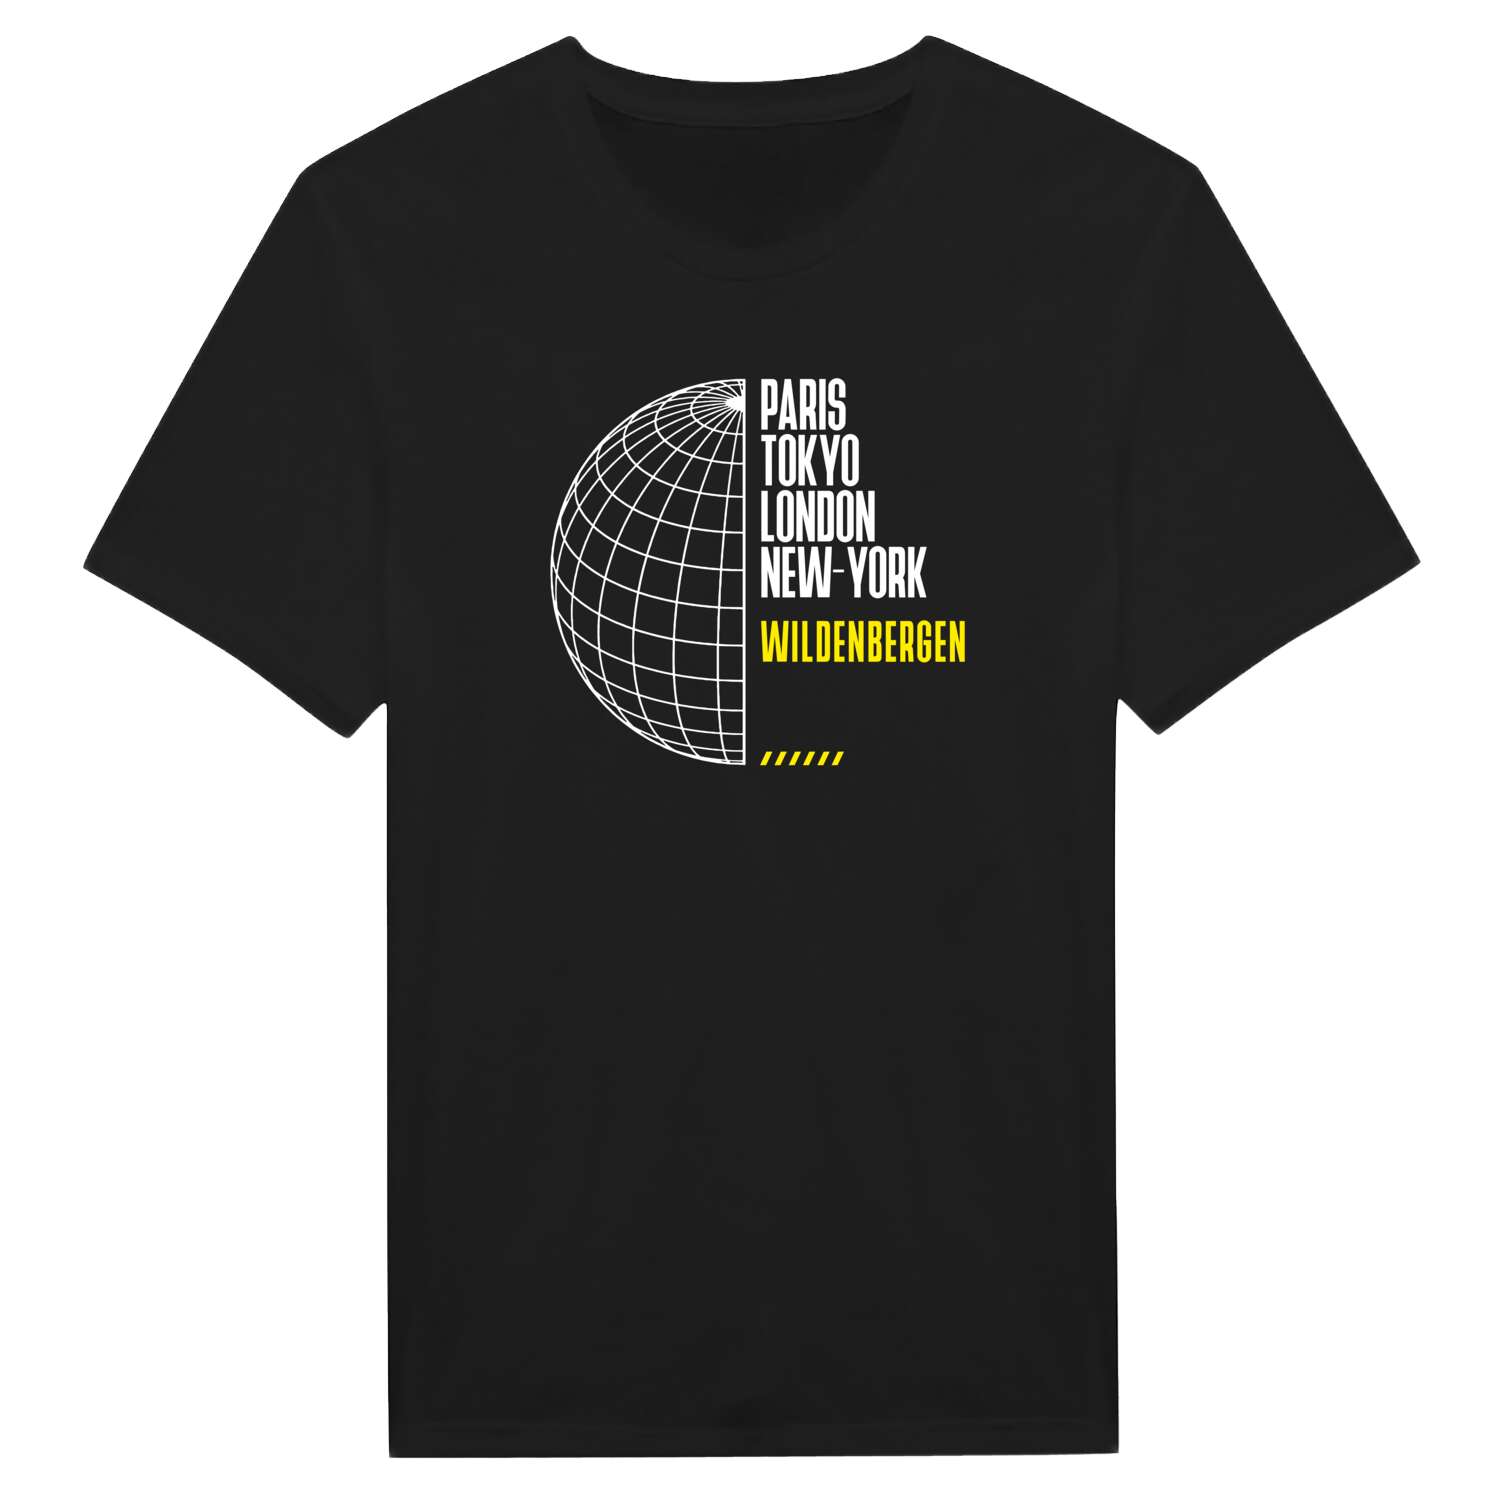 Wildenbergen T-Shirt »Paris Tokyo London«